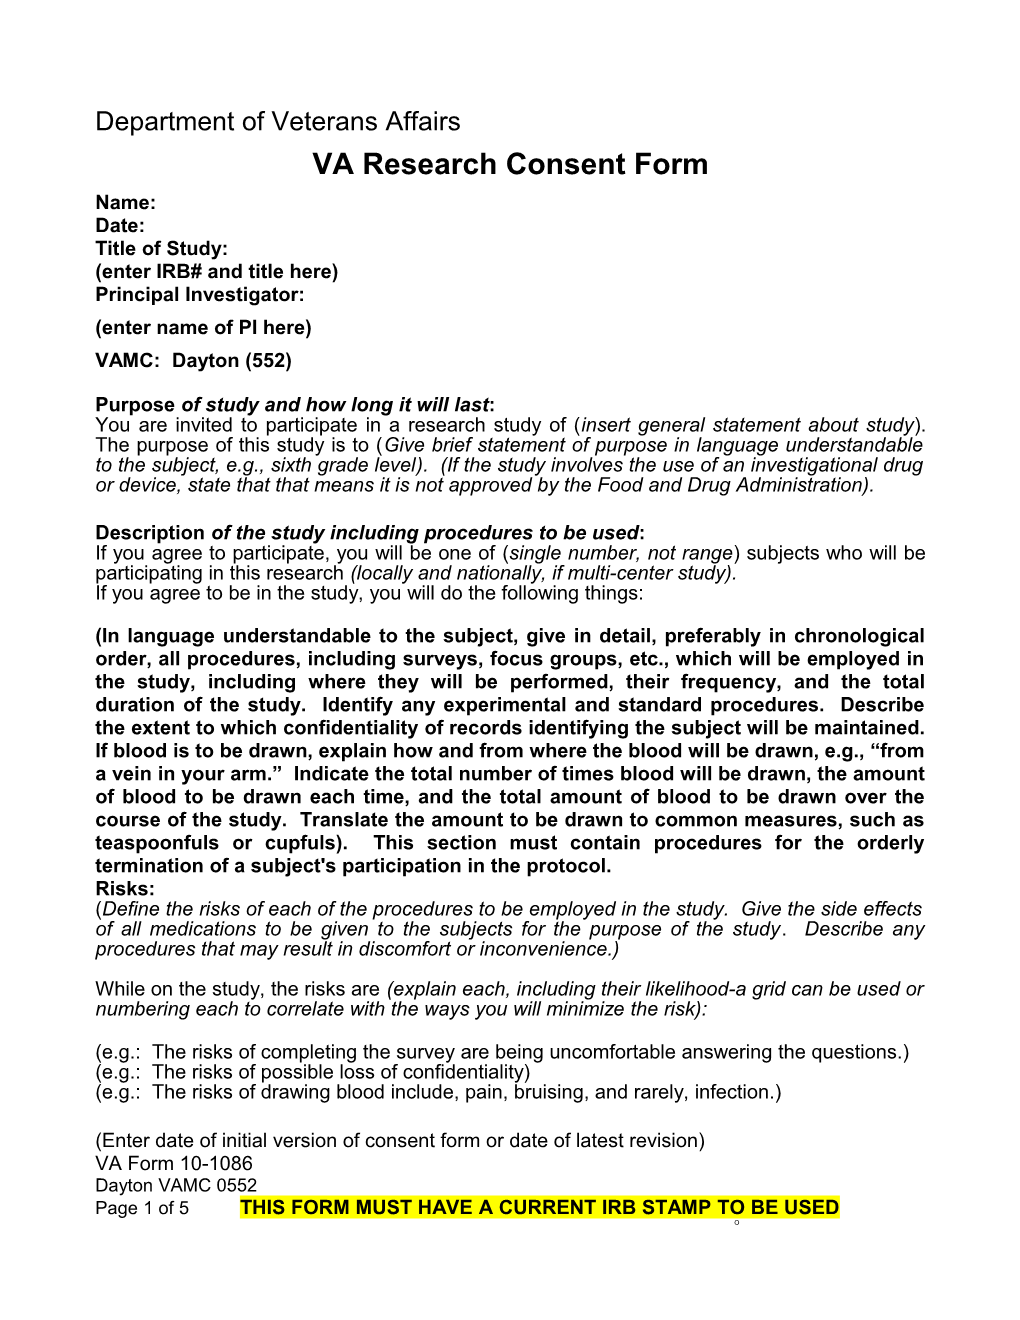 VA Research Consent Form (Dayton VA Medical Center)